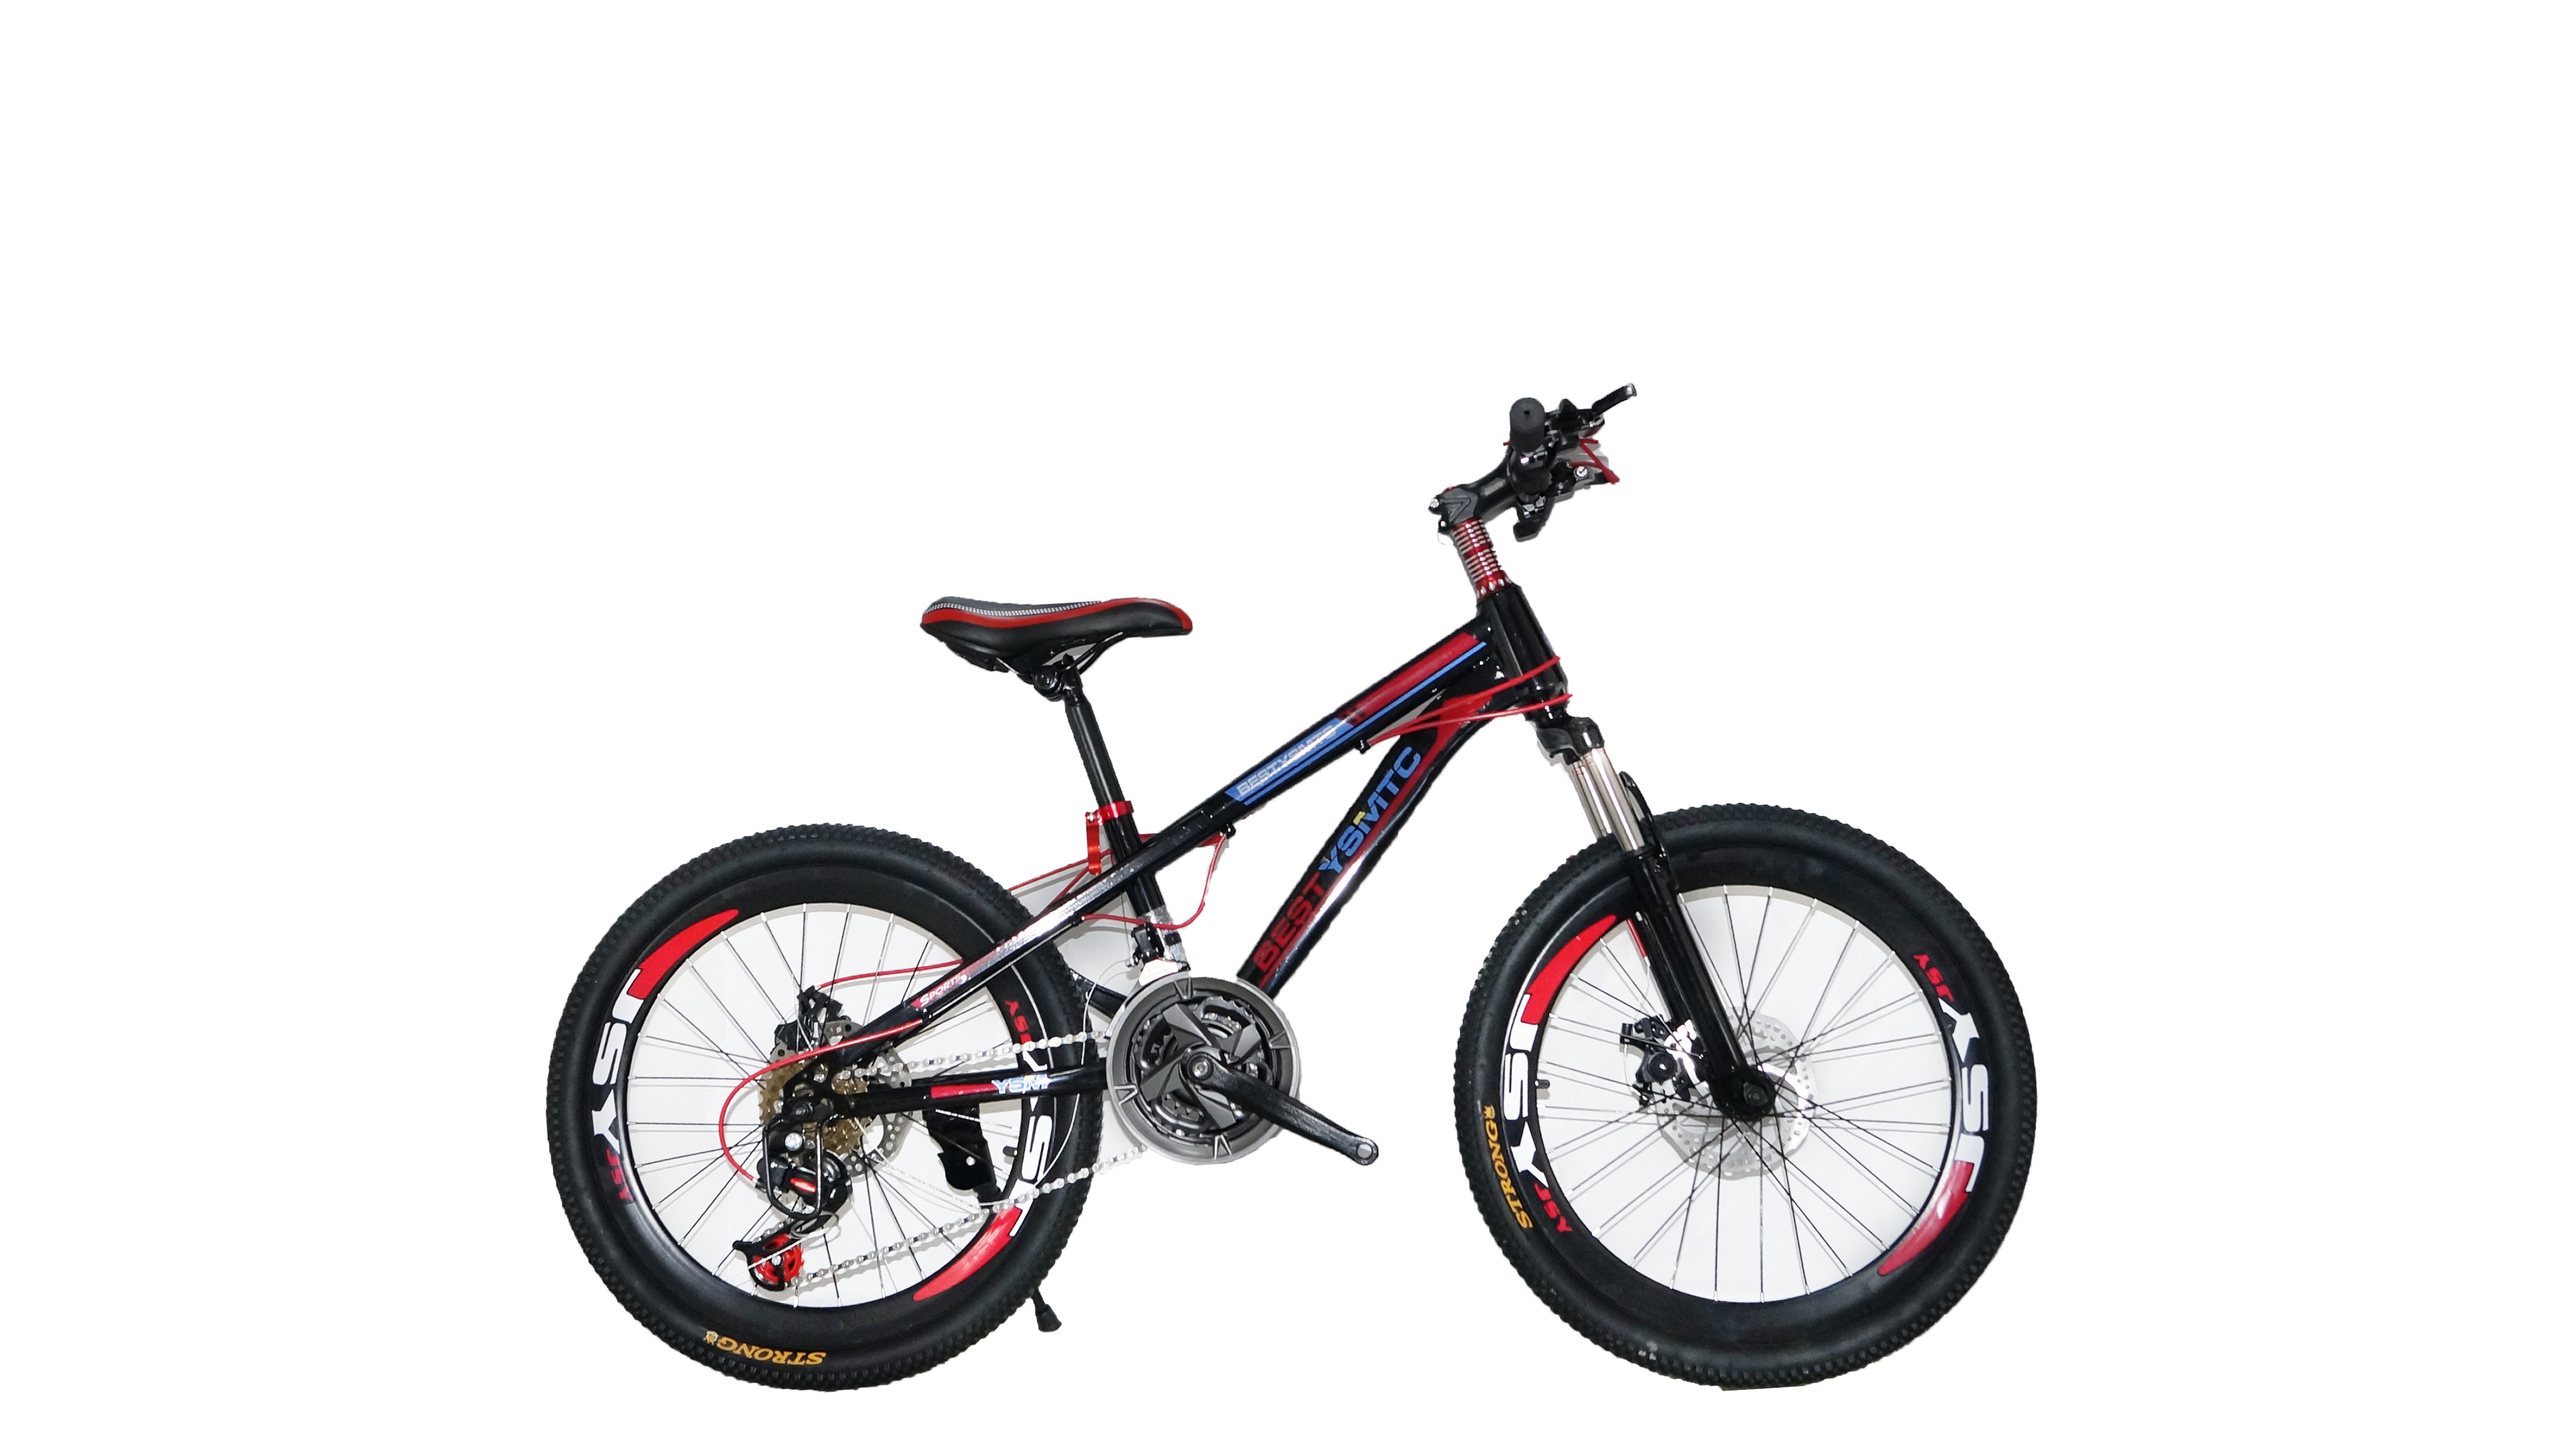 Купить велосипед 22 колеса. Велосипед gt 2016 колеса 22 inch Red. Велосипед с 22 дюймовыми колесами. Велосипед детский 22 дюйма. Велосипед подростковый 22 дюйма.